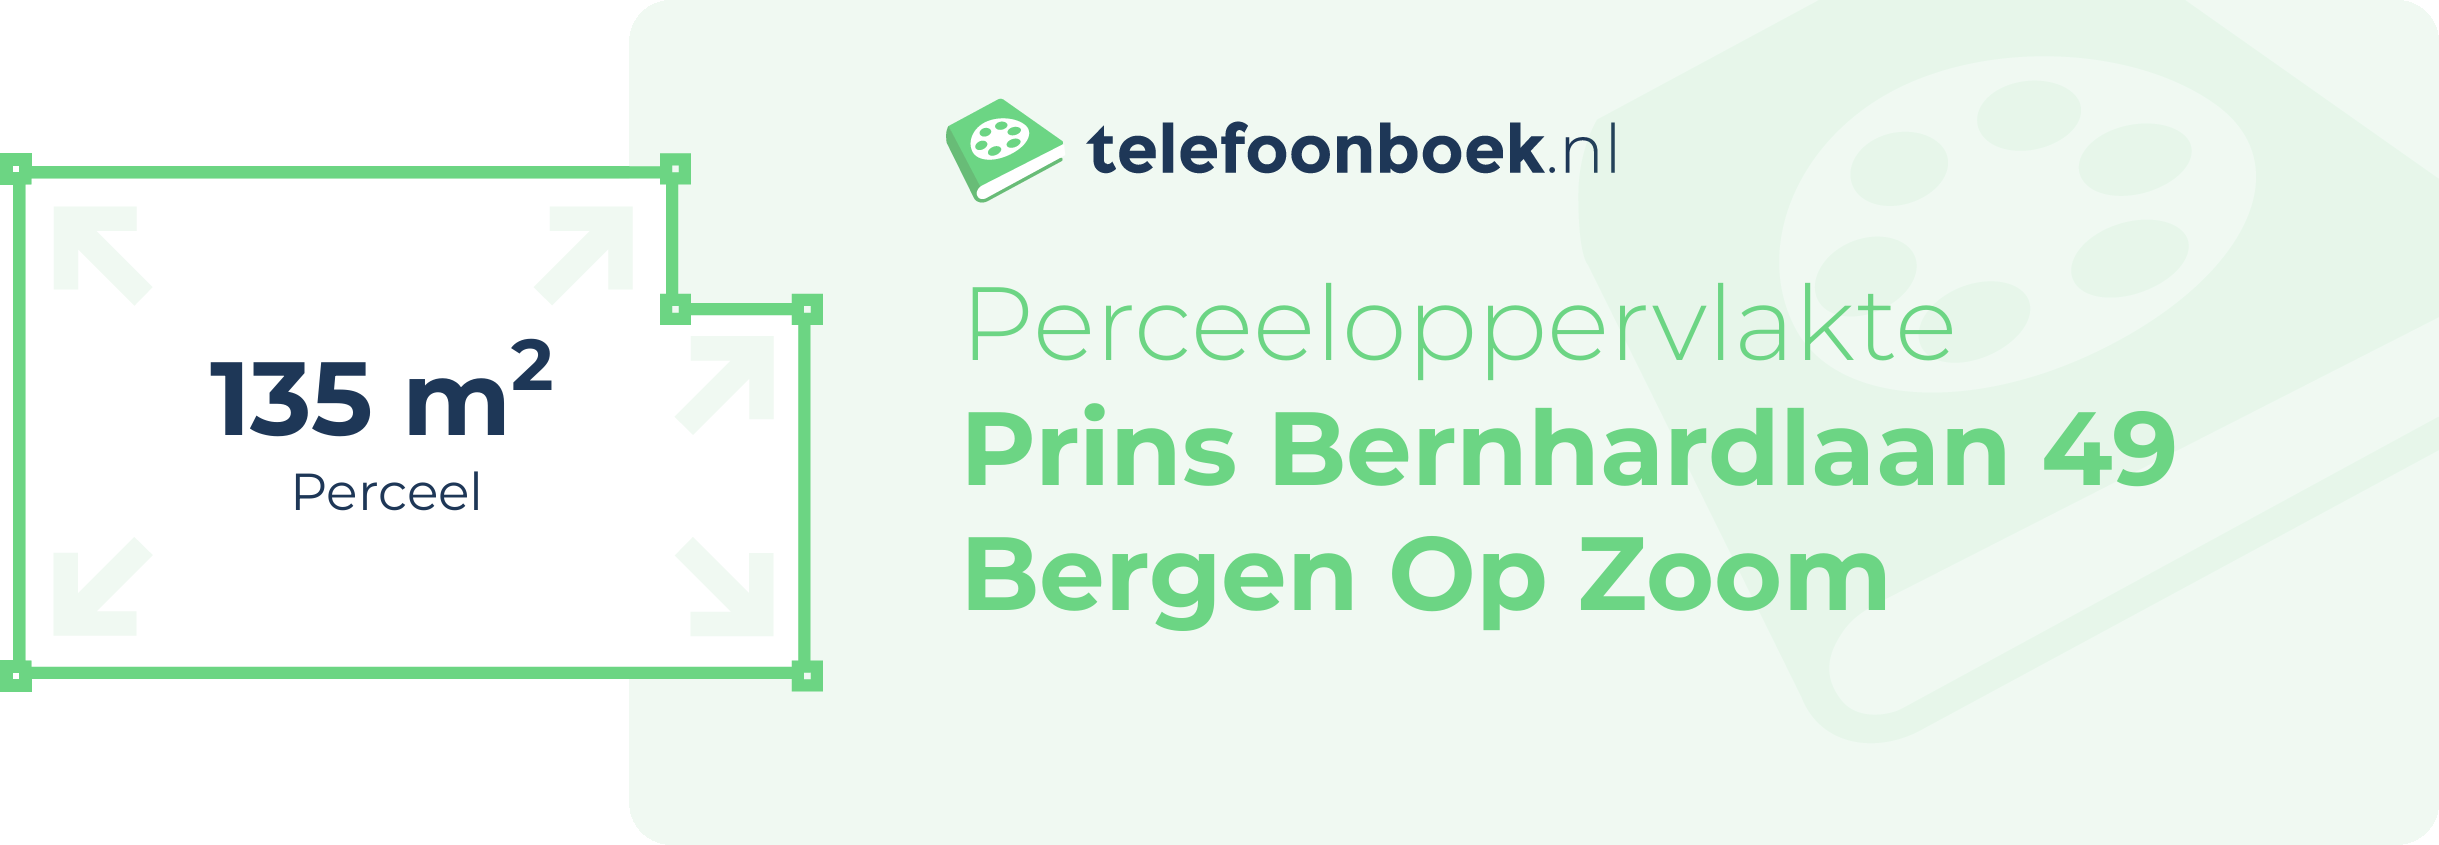 Perceeloppervlakte Prins Bernhardlaan 49 Bergen Op Zoom